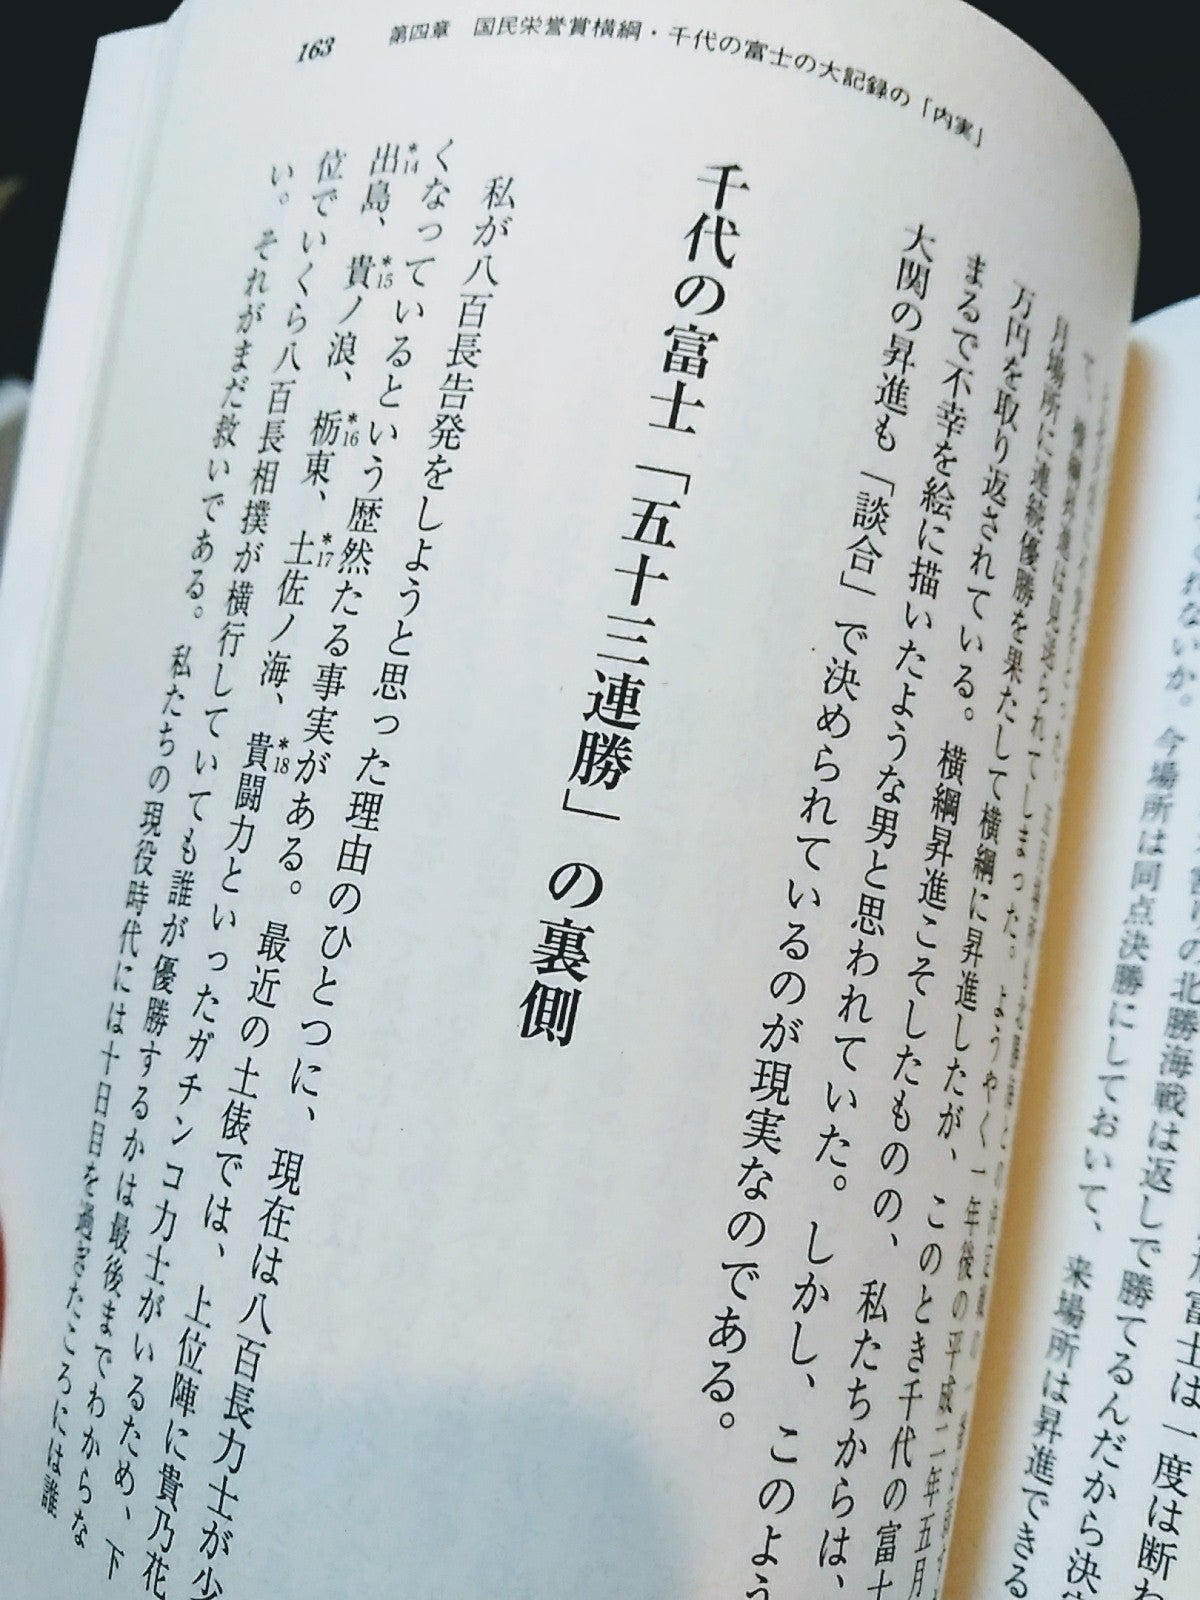 中盆』を読み、千代の富士の53連勝を見る。 | 絵本沼余談